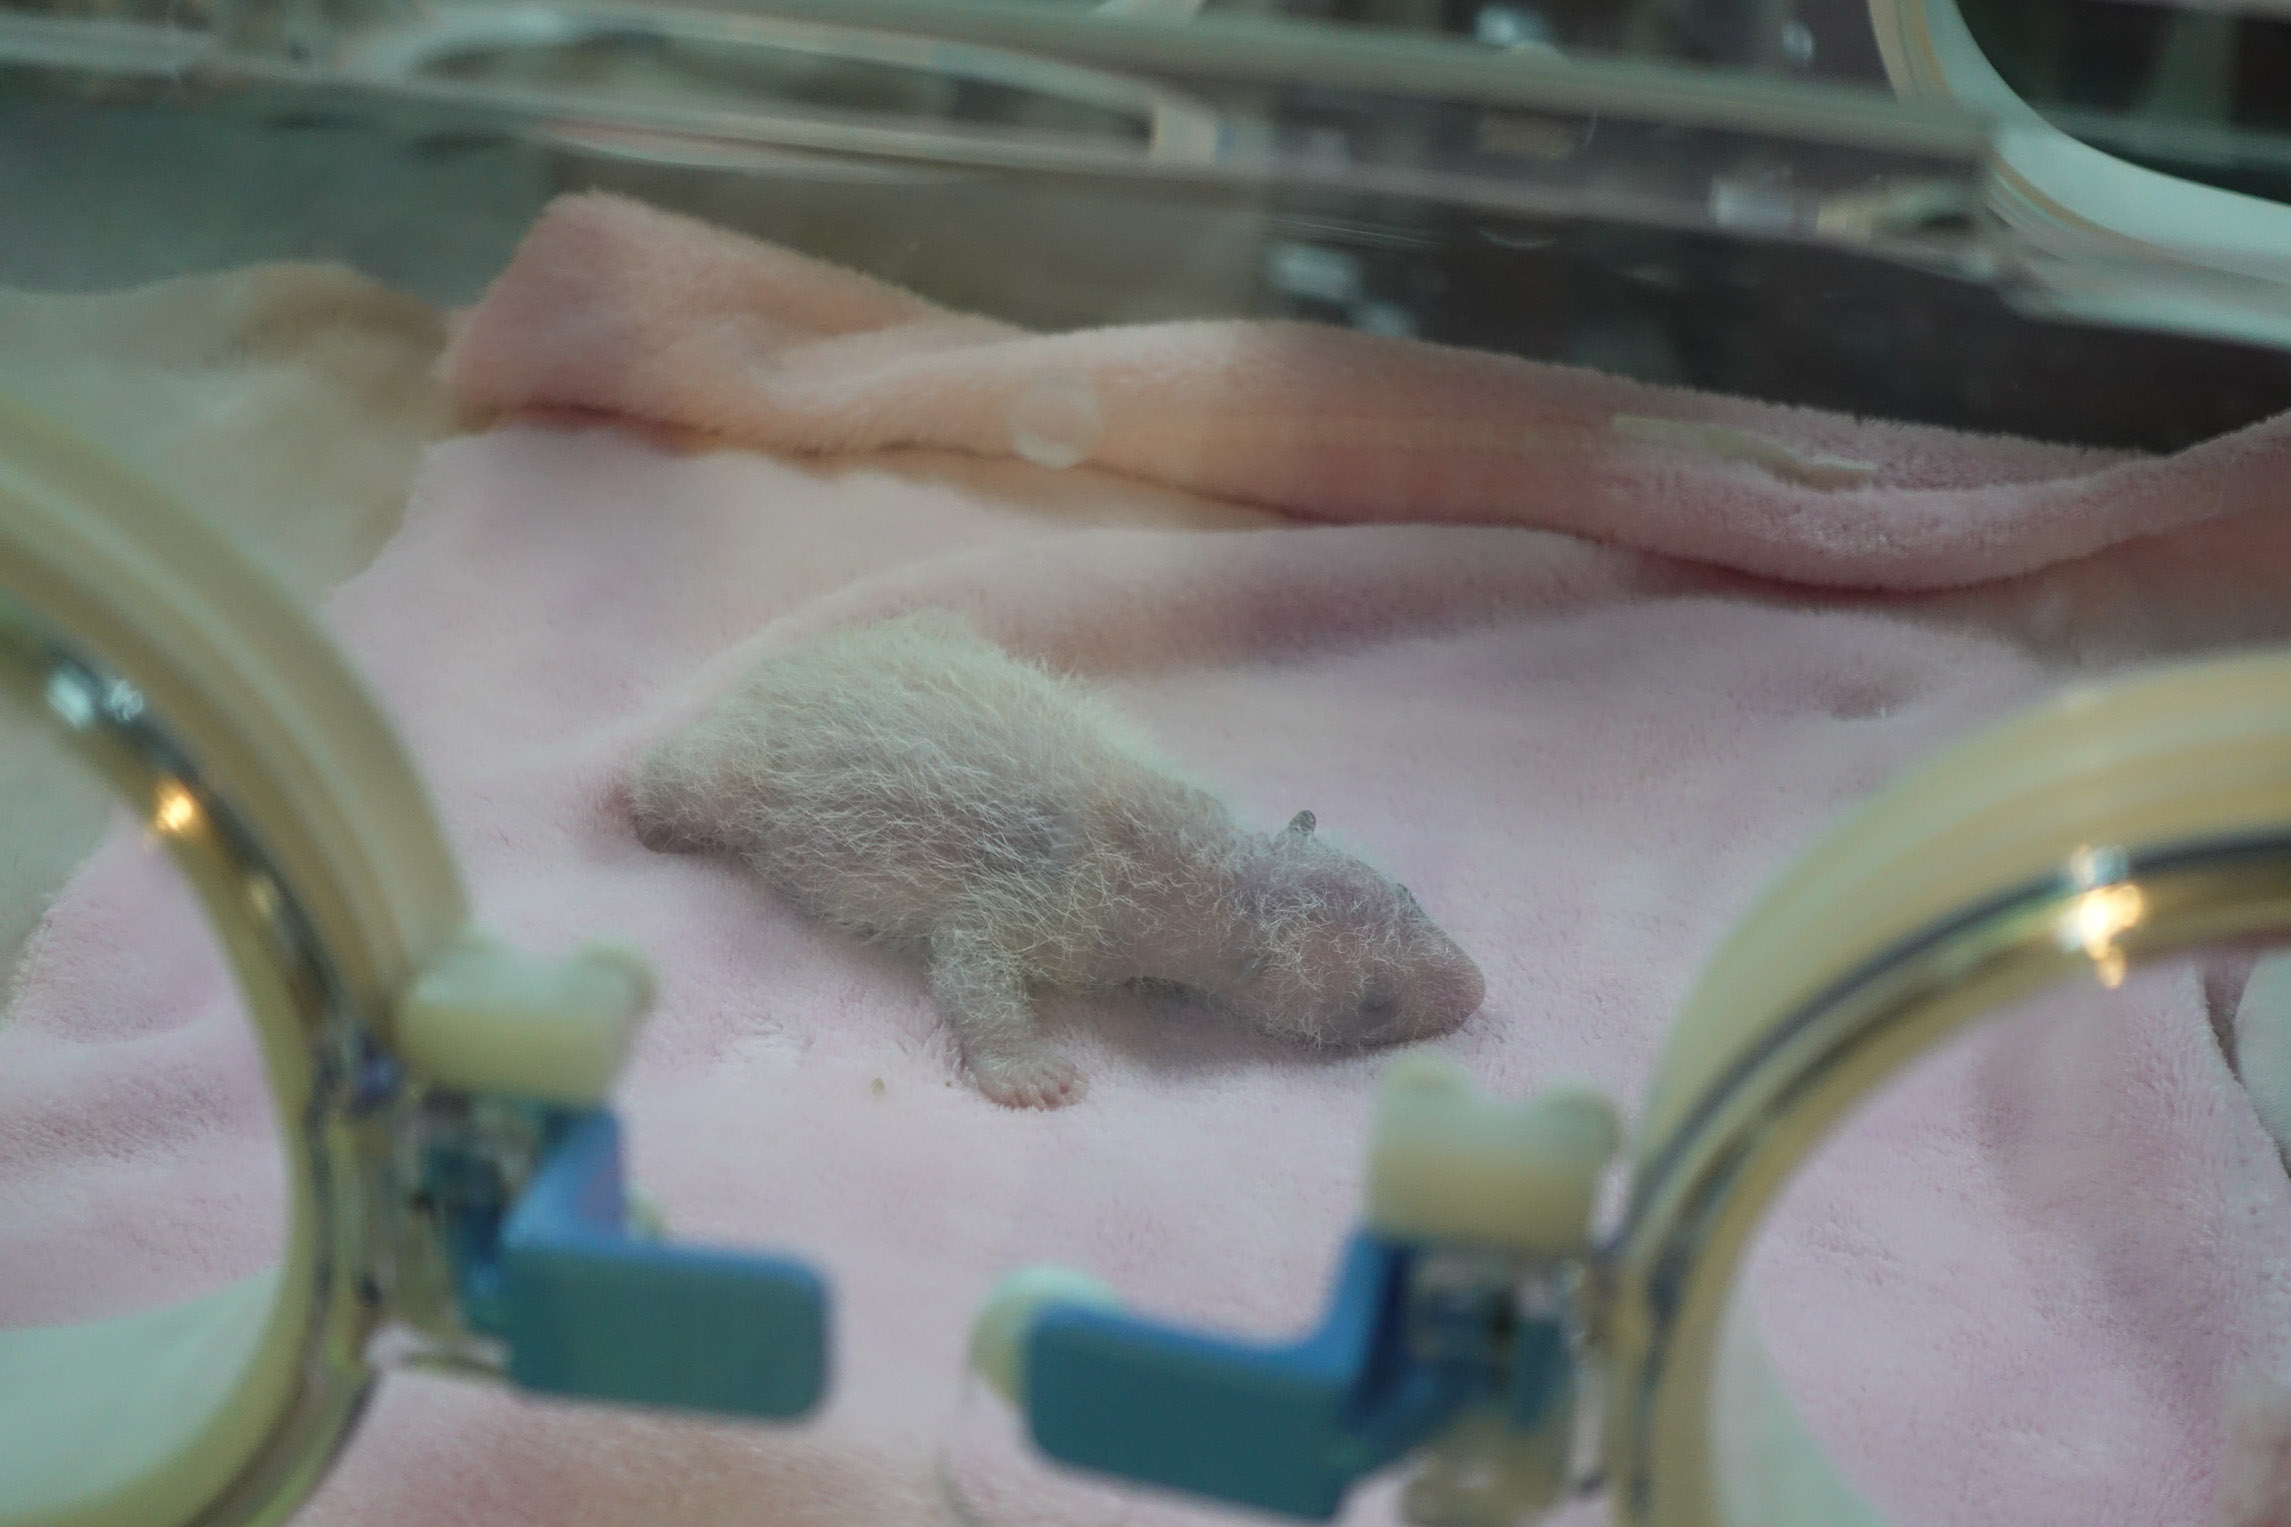 Baby panda in incubator